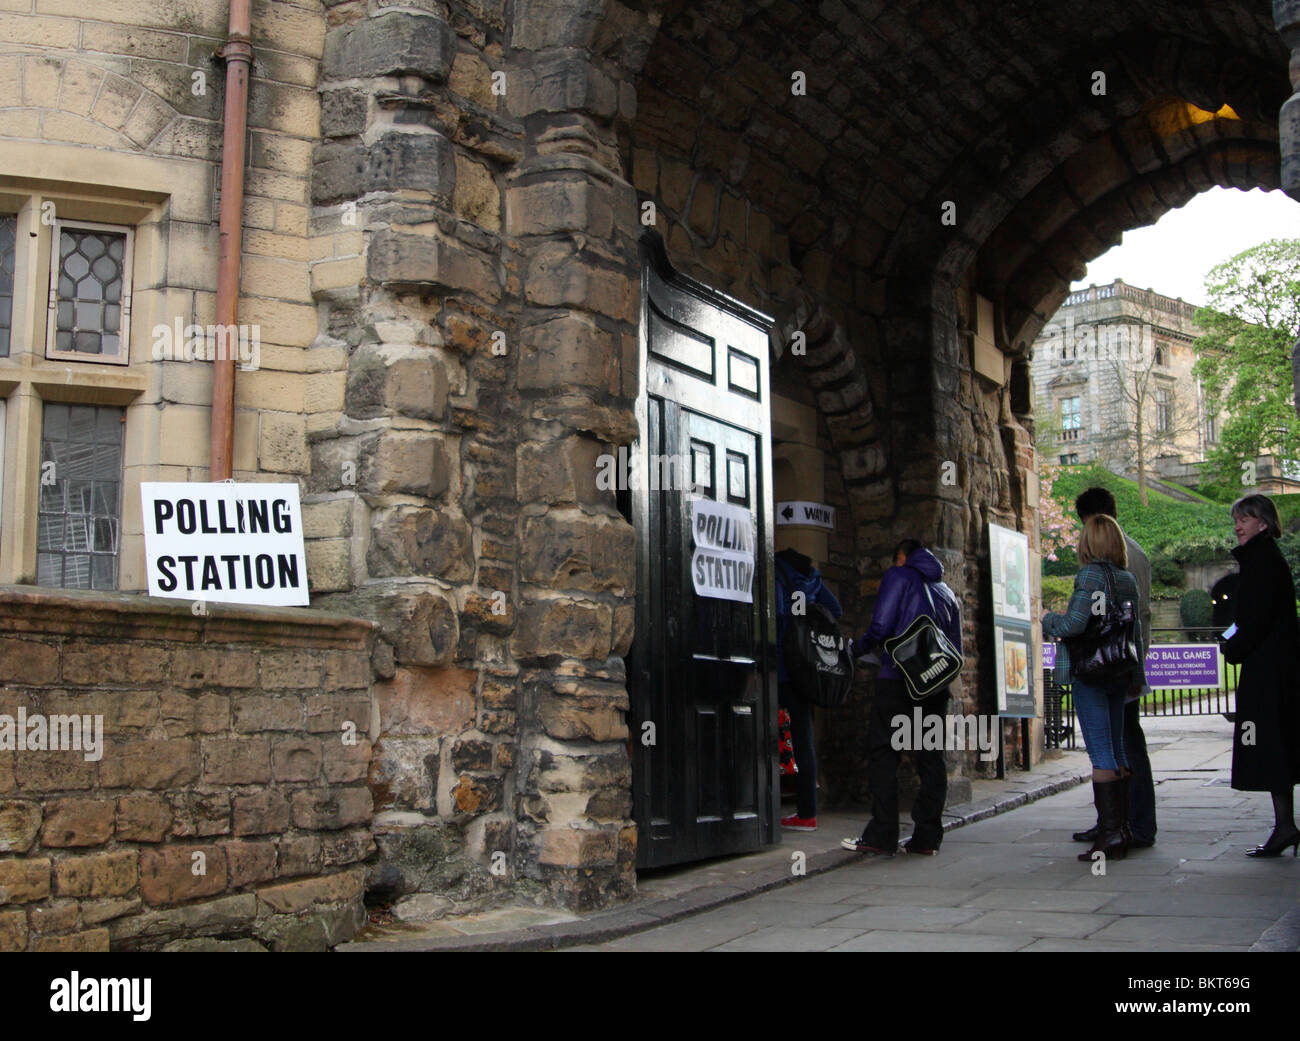 Mise en file d'électeurs au bureau de scrutin situé dans la maison de gardien au château de Nottingham, Nottingham, Angleterre, Royaume-Uni Banque D'Images